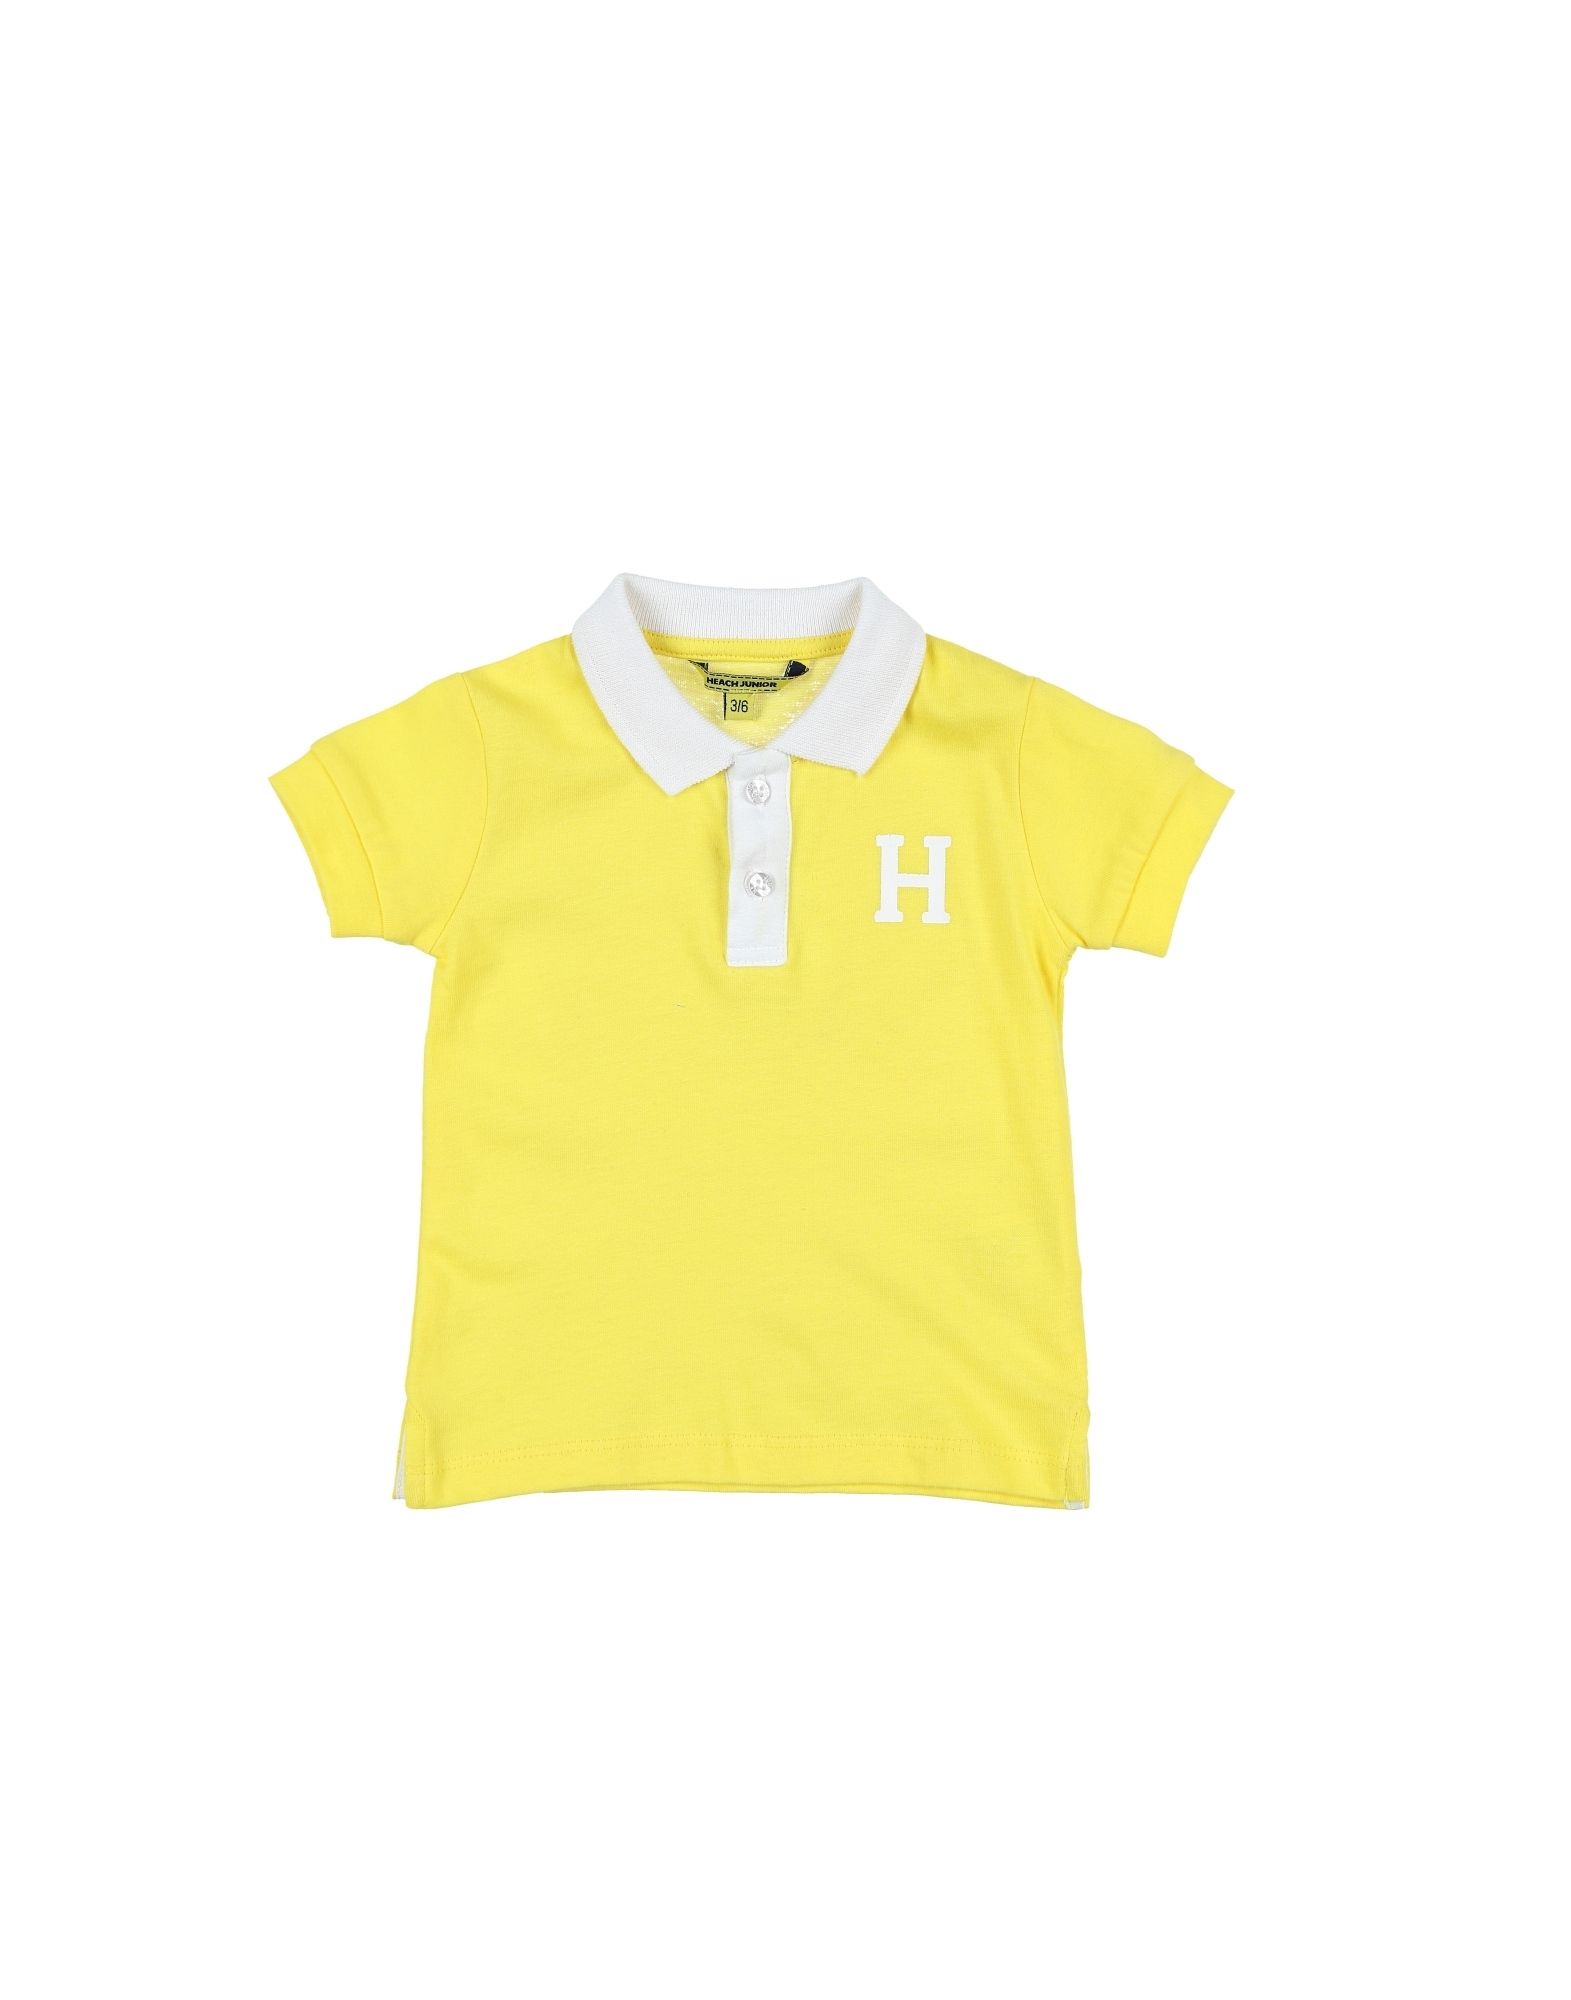 Heach Junior By Silvian Heach Kids' Polo Shirts In Yellow